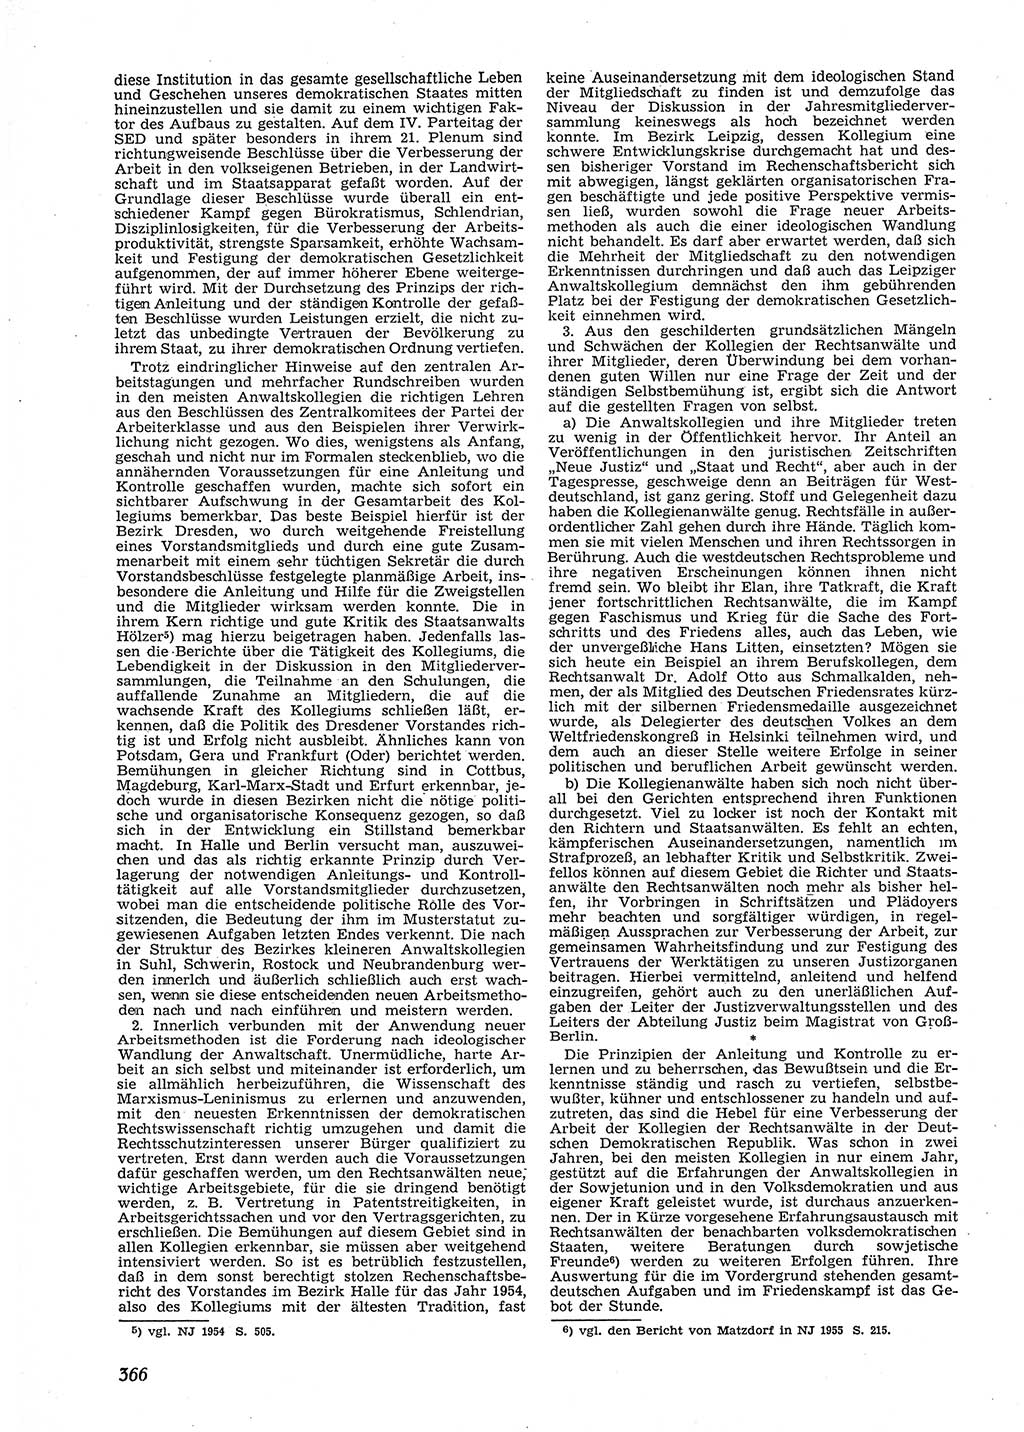 Neue Justiz (NJ), Zeitschrift für Recht und Rechtswissenschaft [Deutsche Demokratische Republik (DDR)], 9. Jahrgang 1955, Seite 366 (NJ DDR 1955, S. 366)